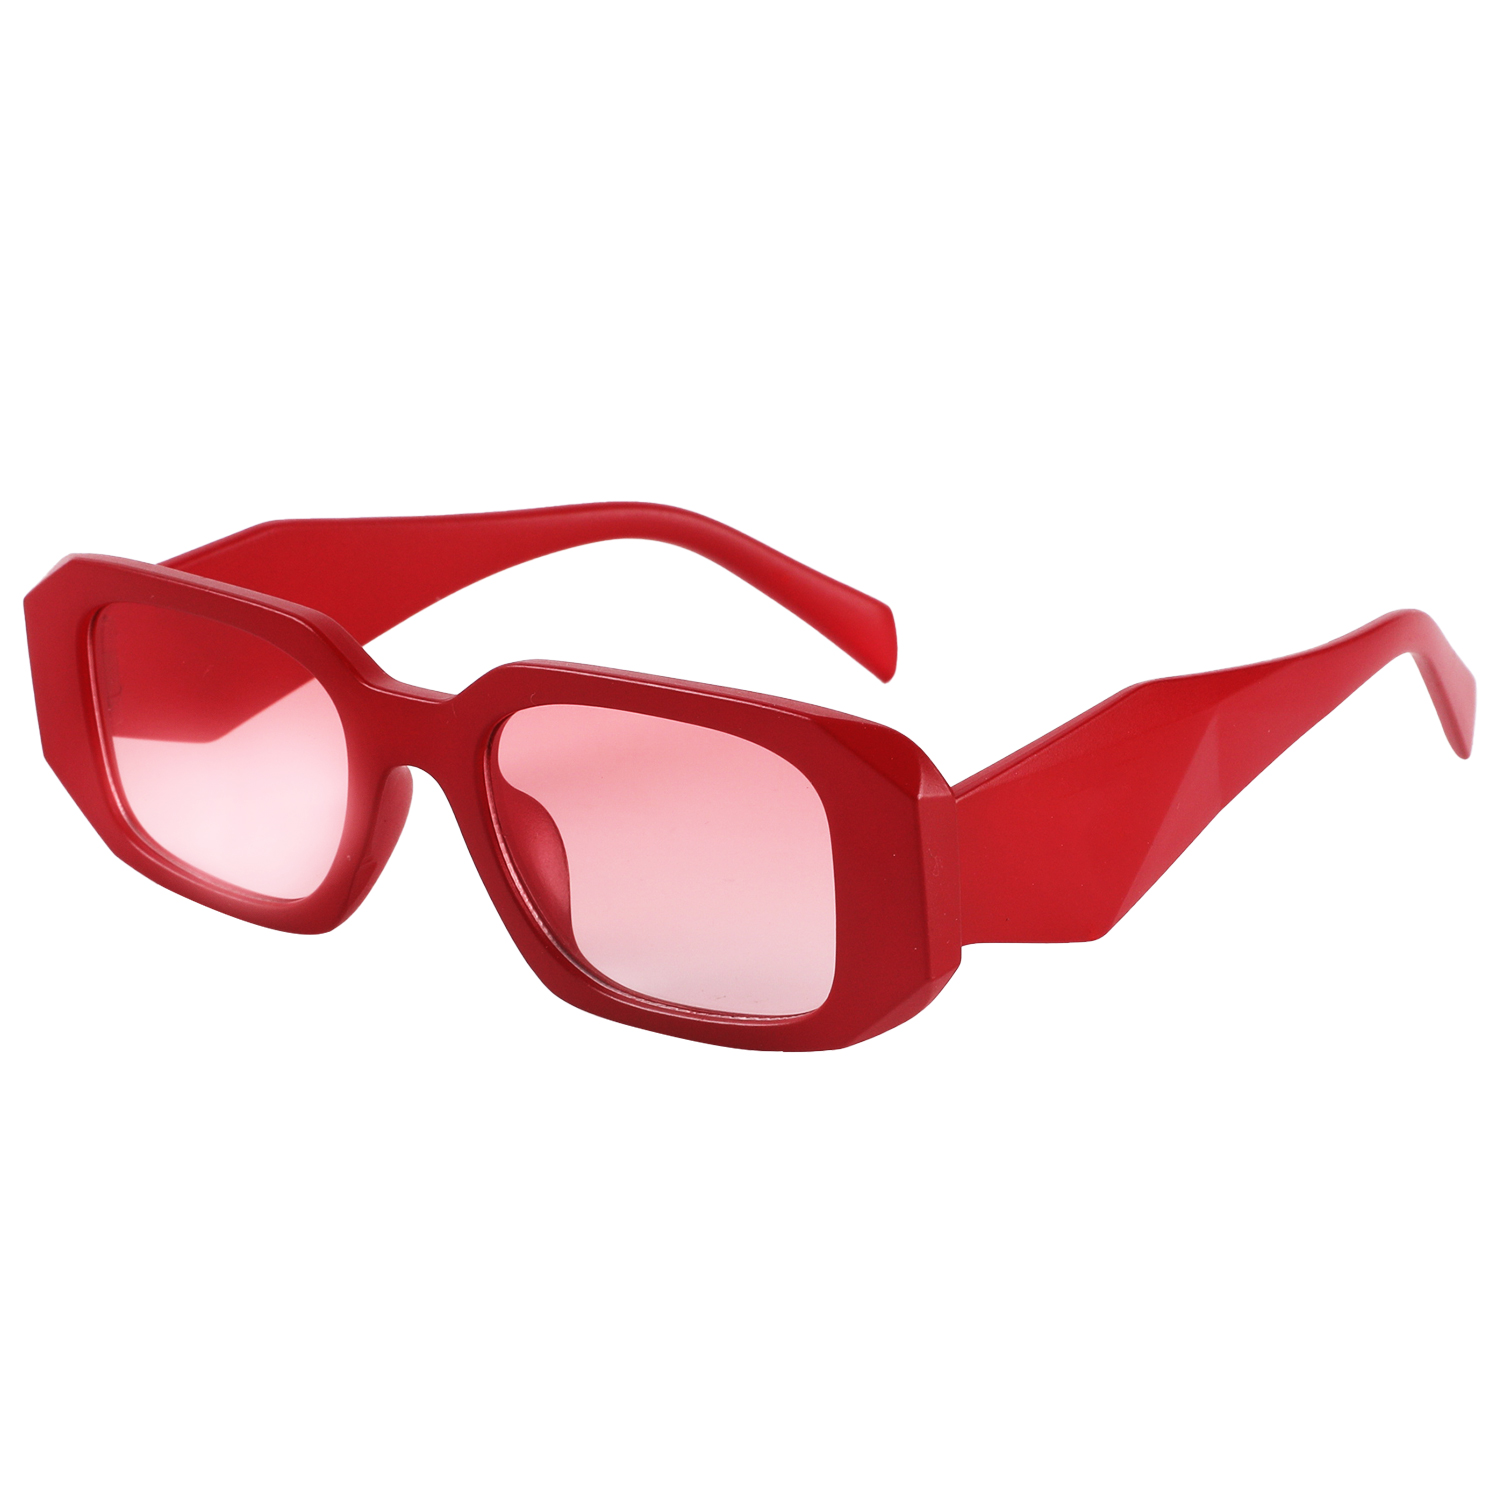 2023年新款时尚太阳眼镜 订制 礼品促销 防紫外线太阳眼镜JB2314图